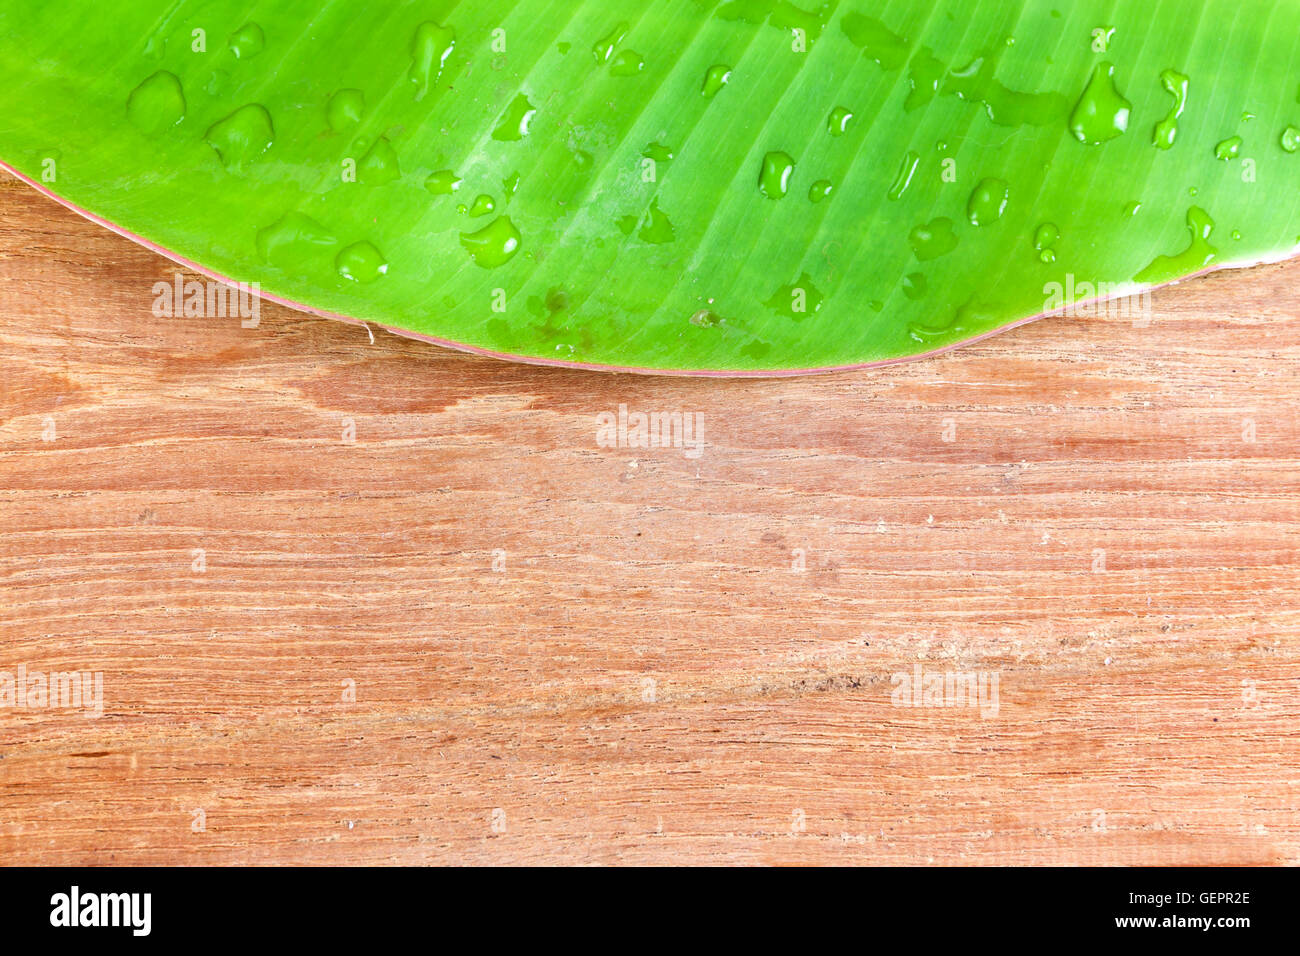 Banane Blatt grün Farbe frisch auf hölzernen Hintergrund Stockfoto